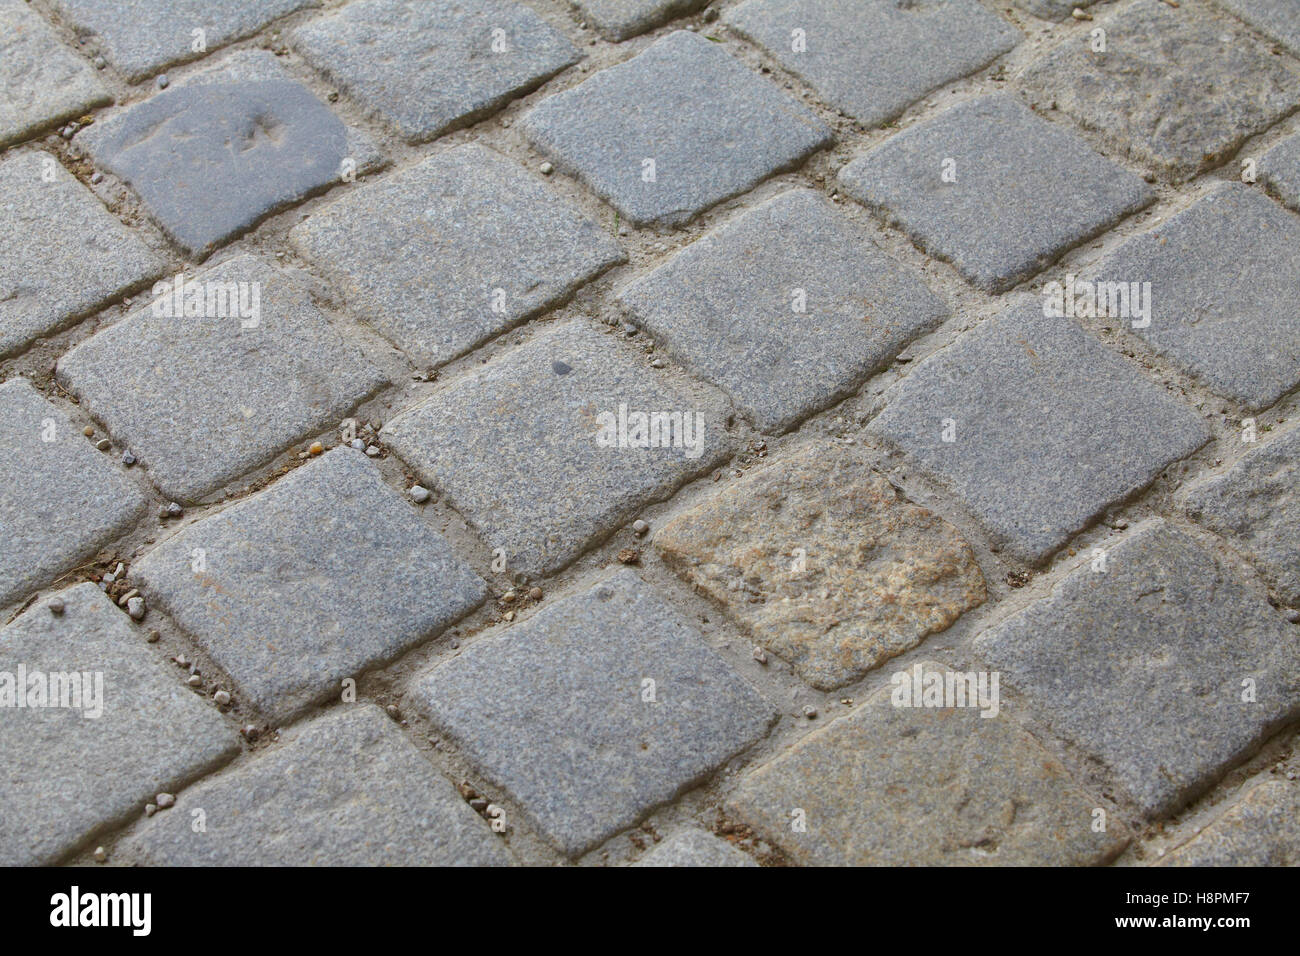 Stone pavement Stock Photo